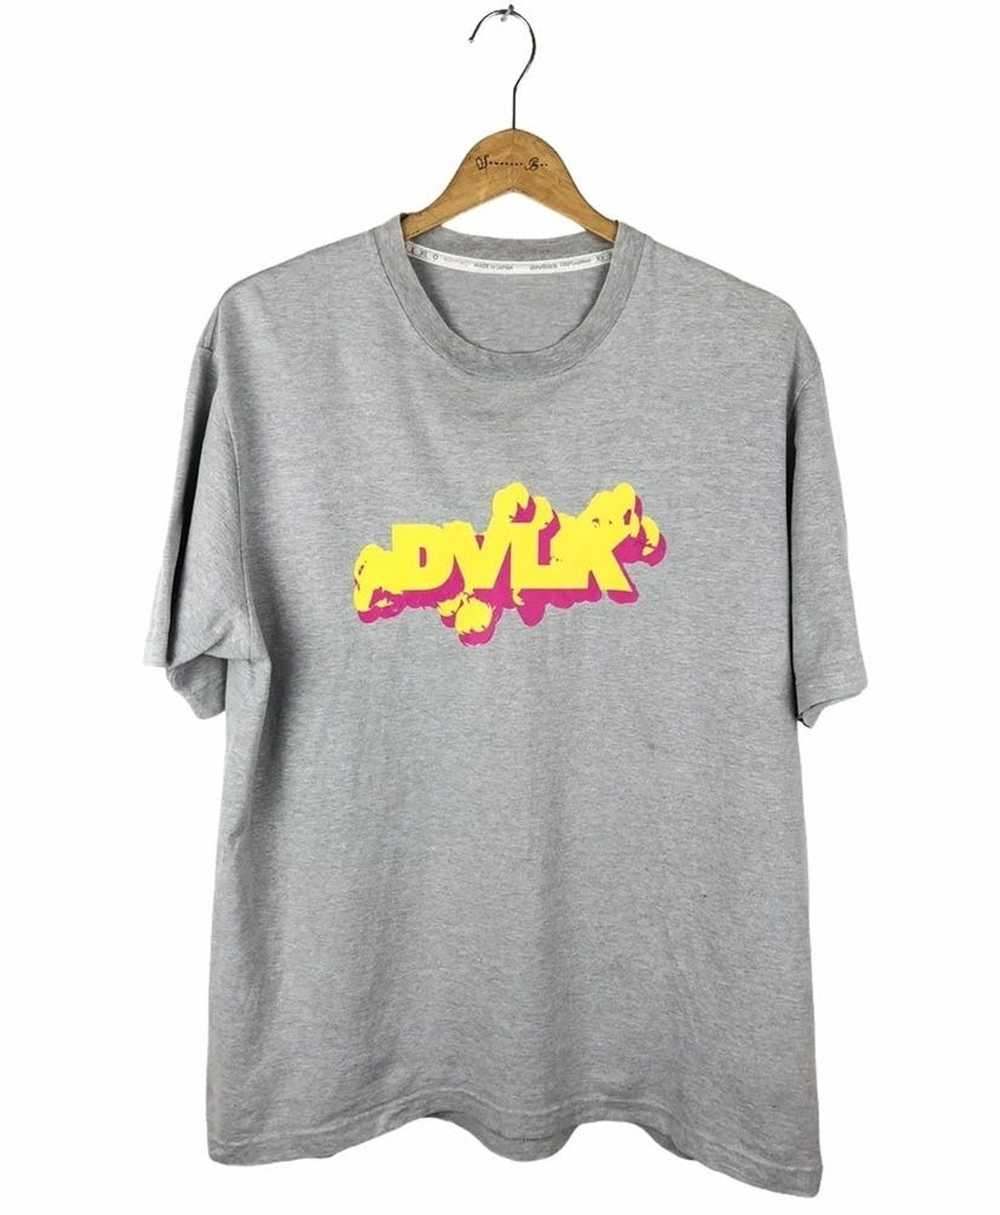 Devilock × Japanese Brand DVLK Devilock T-Shirt - image 1